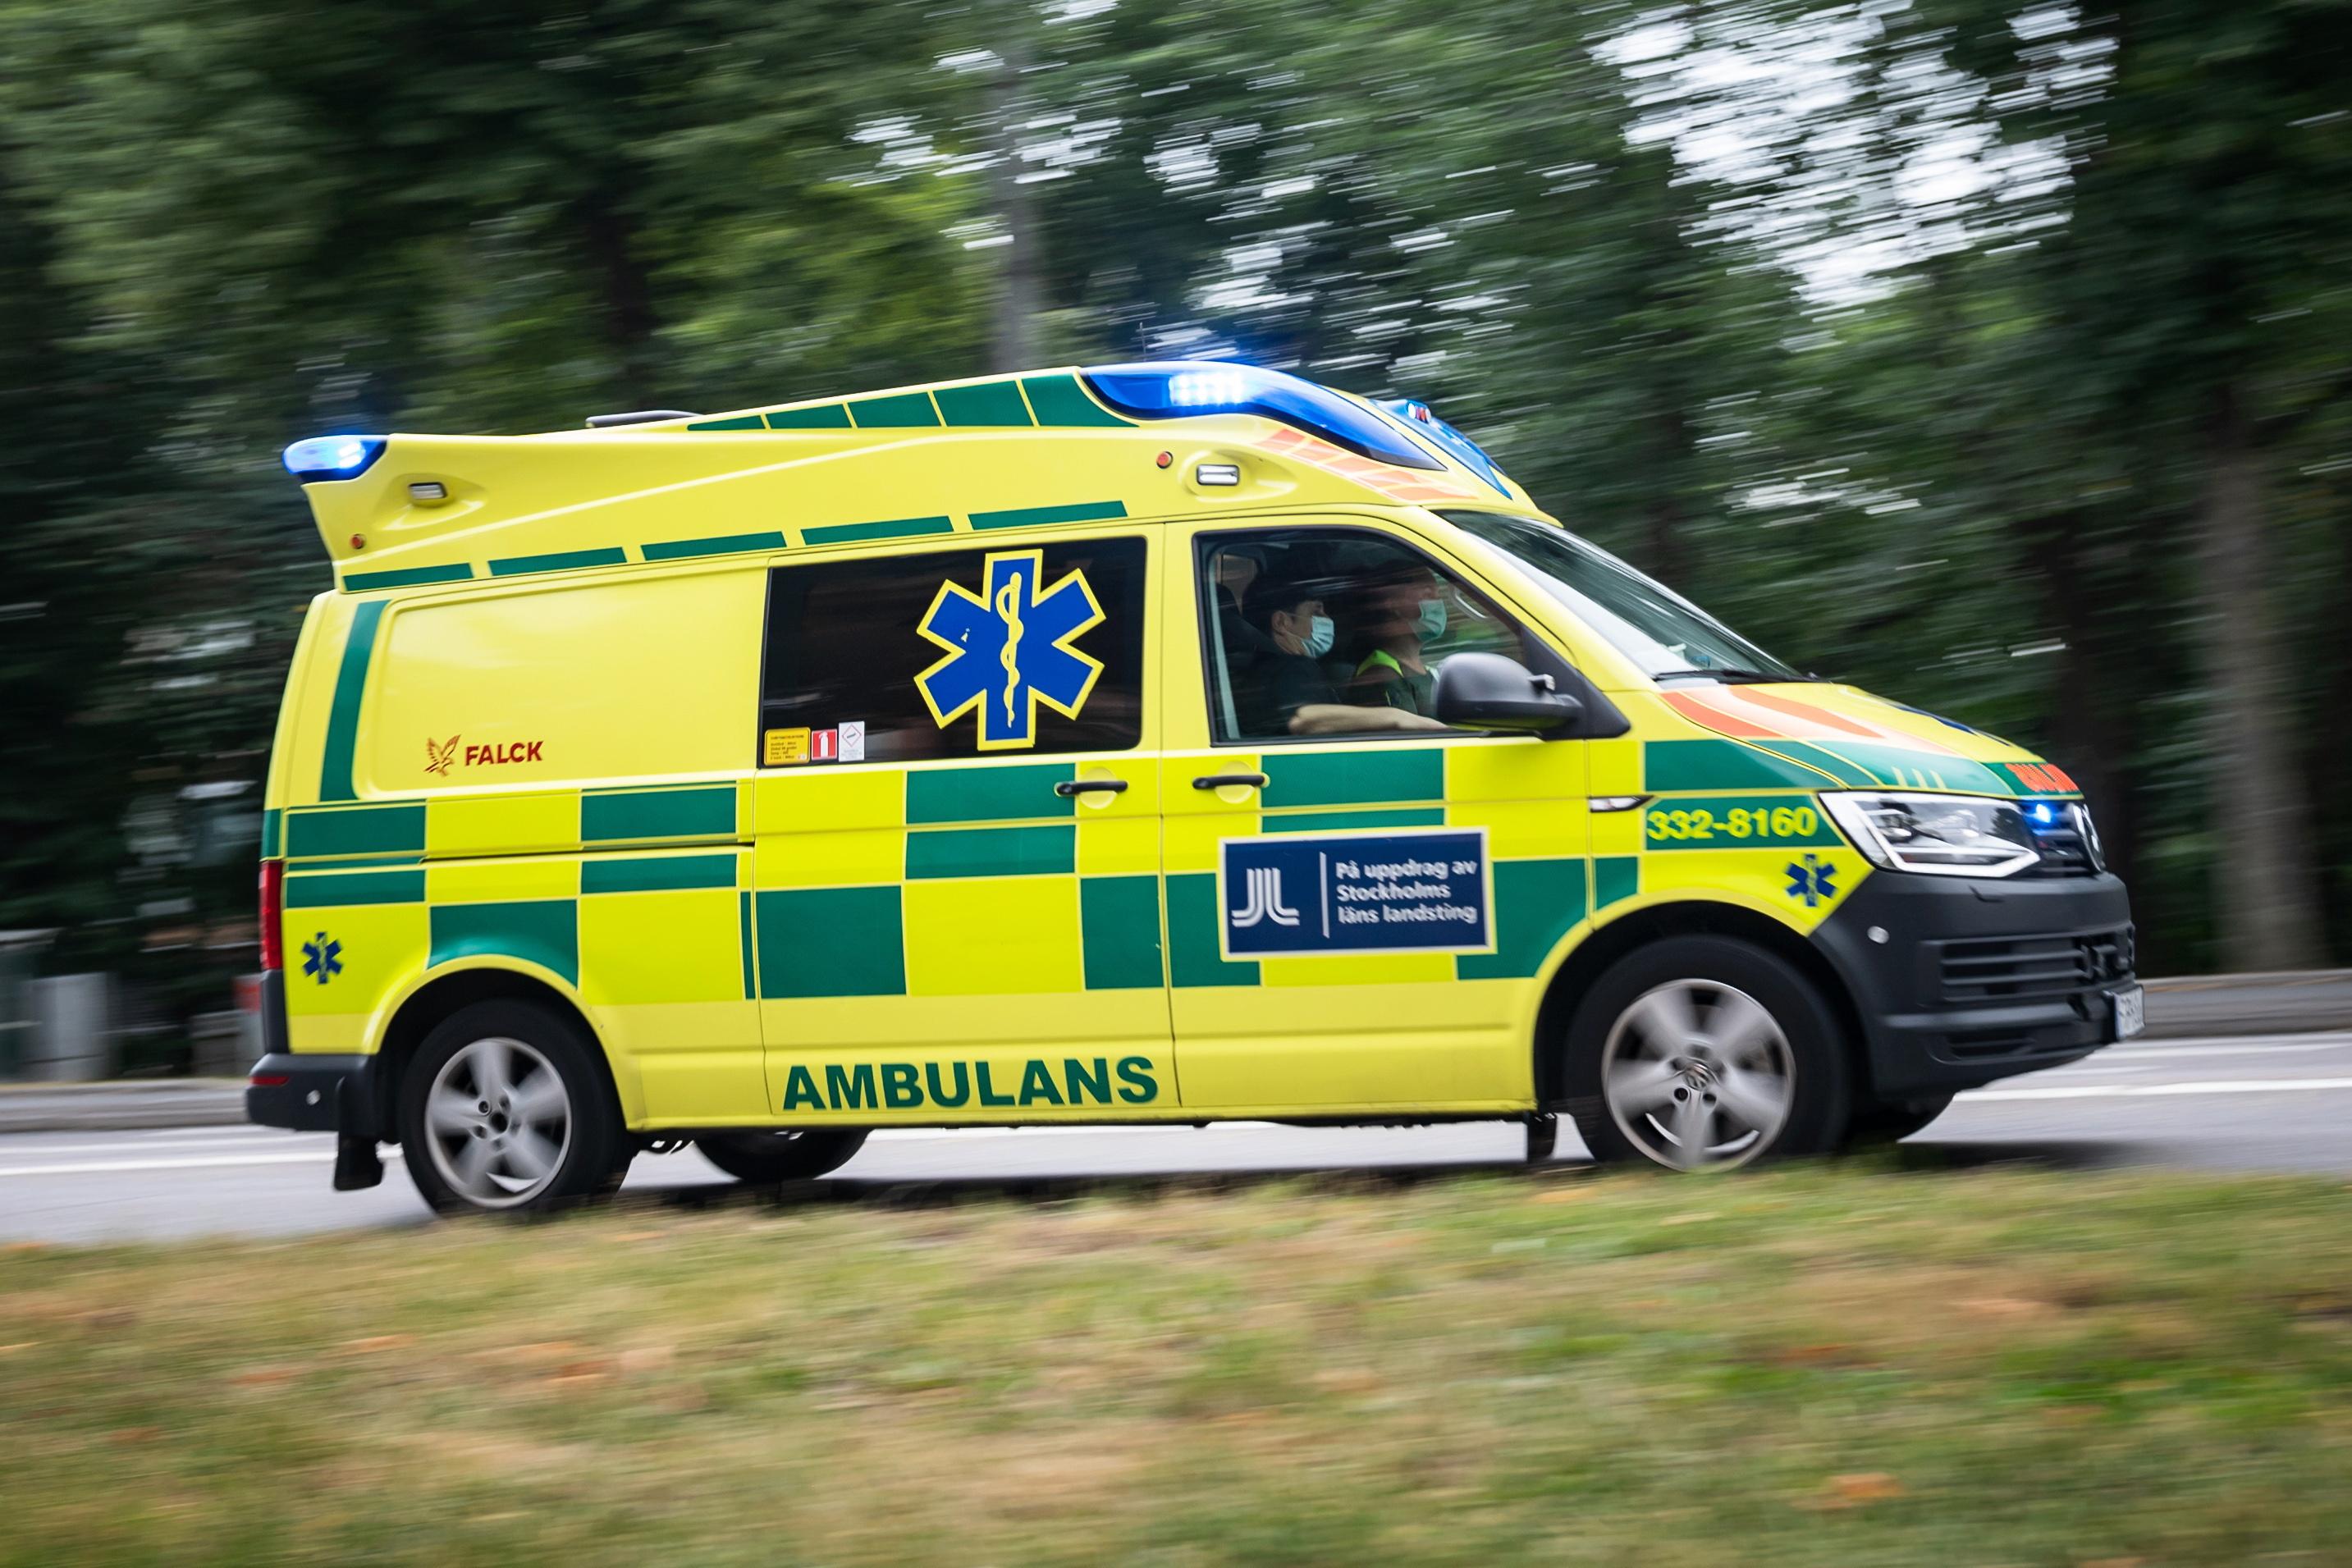 Två personer fördes till sjukhus efter trafikolyckan på E6 i Munkedals kommun. En person har nu avlidit. Arkivbild. Foto: Stina Stjernkvist/TT